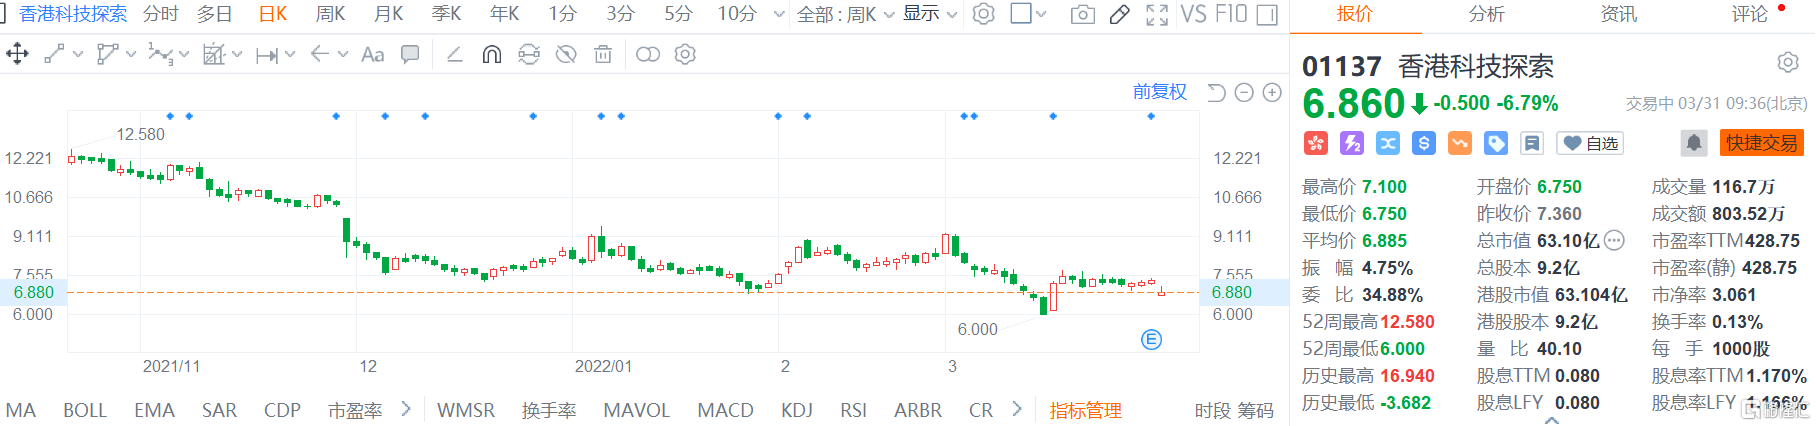 香港科技探索(1137.HK)股价跳空低开 现报6.86港元跌幅6.8%